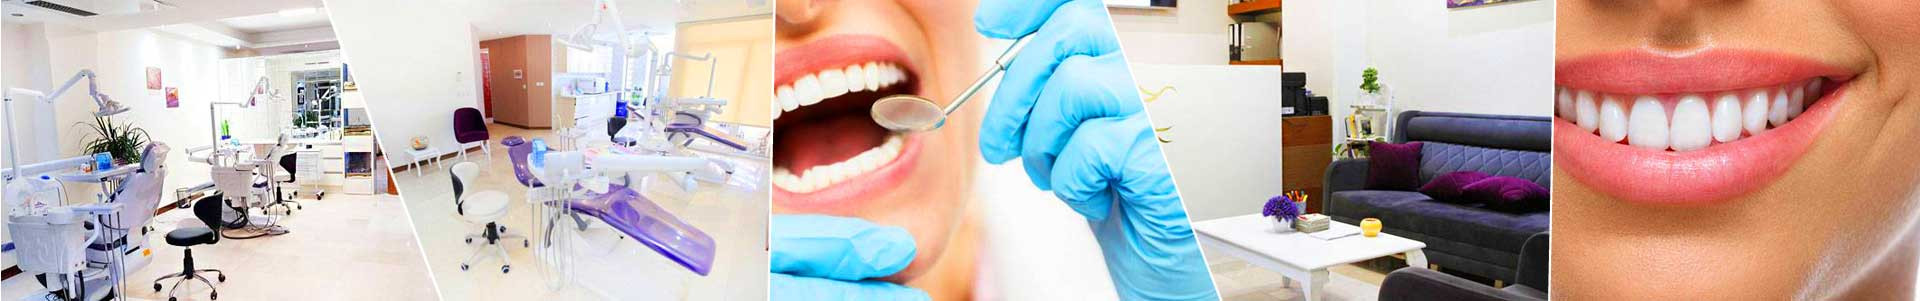 بهترین خرید دندانپزشکی آریا تهران با بیشترین درصد تخفیف در قیمت - 21%